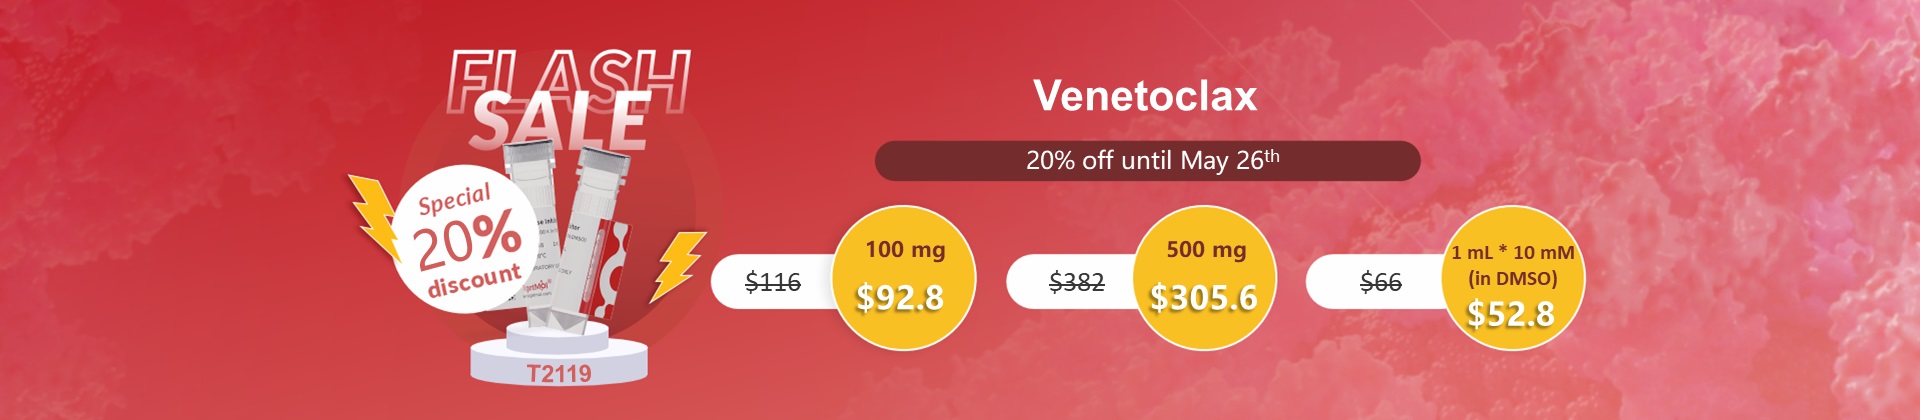 Venetoclax 80% discount